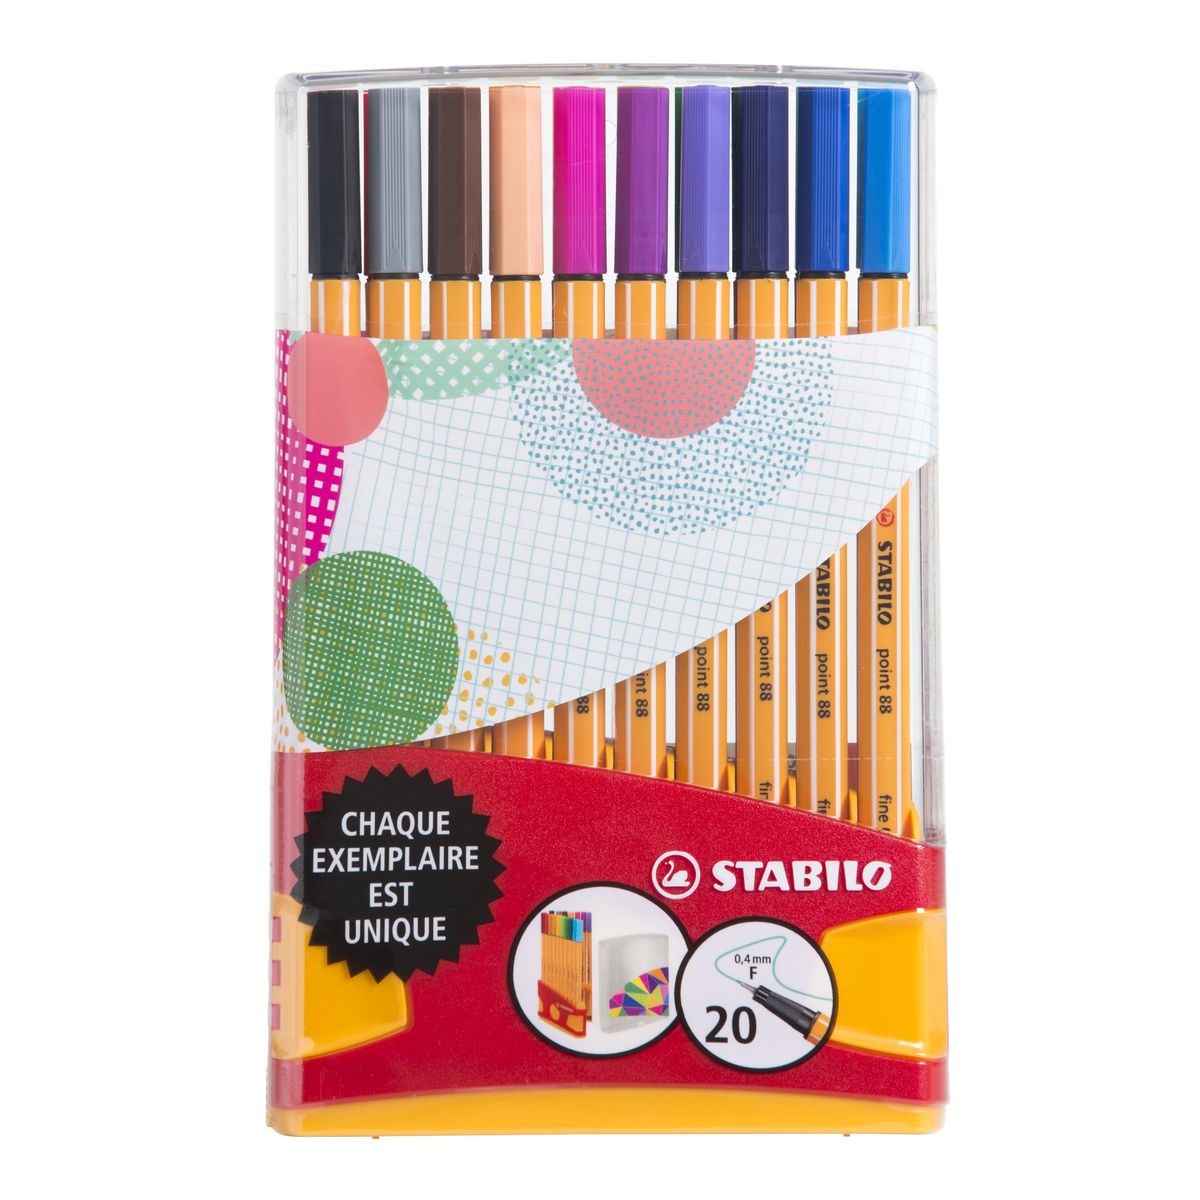 STABILO Stylo-feutres Point 88, ColorParade, étui de 20 feutres pointes  fines (0,4 mm), couleurs d'encre assorties - Feutres Finsfavorable à  acheter dans notre magasin